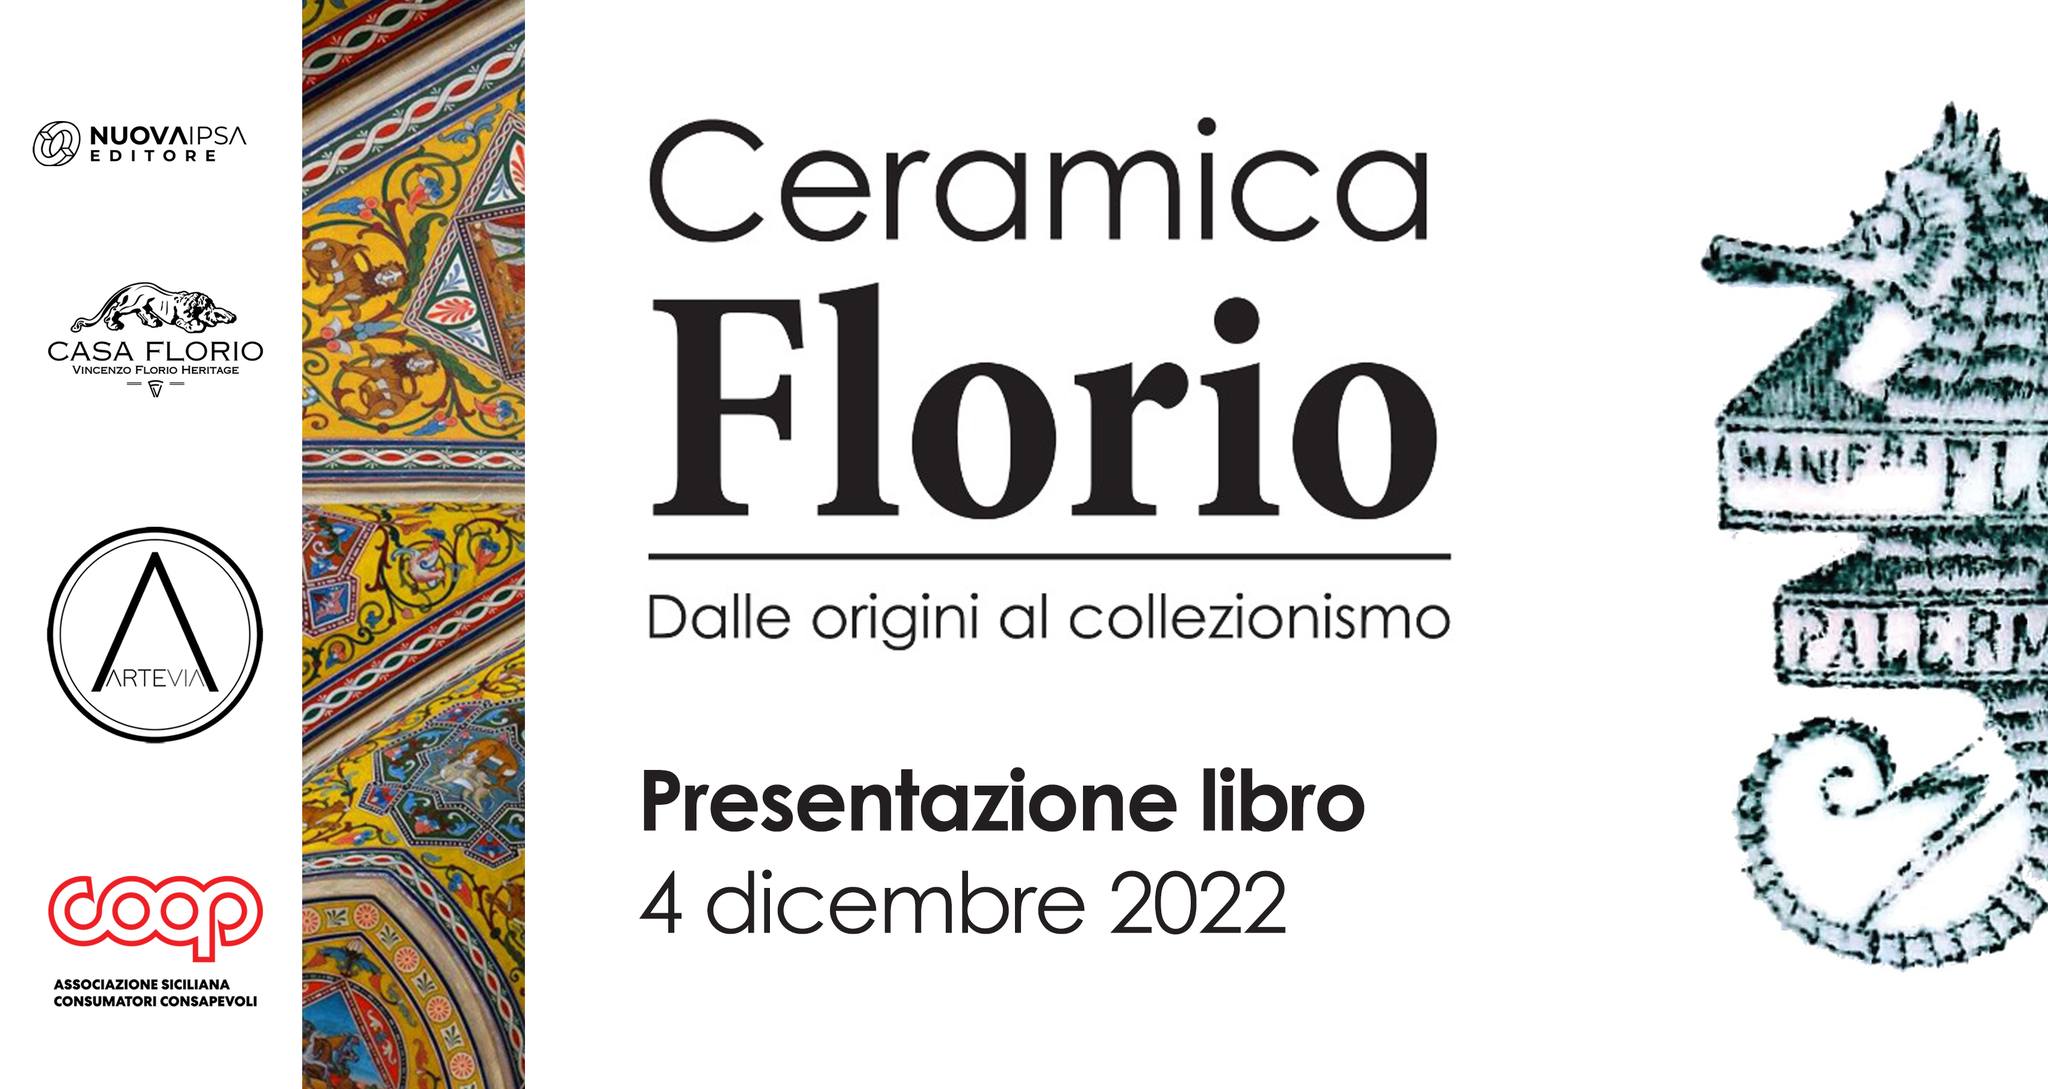 Ceramica Florio. Dalle origini al collezionismo